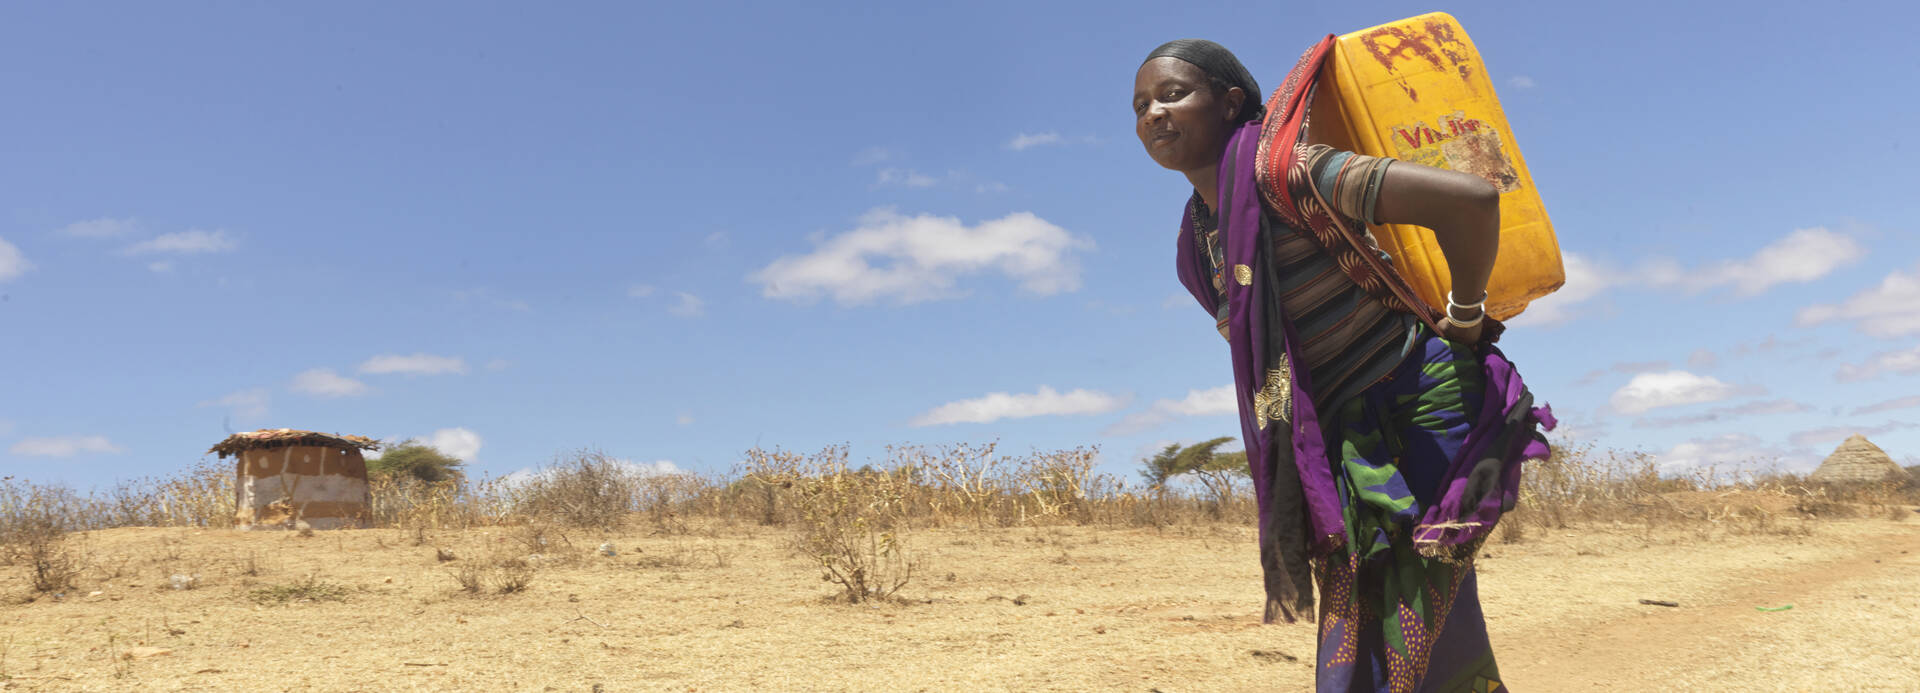 Äthiopien: Die Frauen des Dorfes können nun Wasser am neu gebauten Brunnen holen und ersparen sich weite Fußwege.